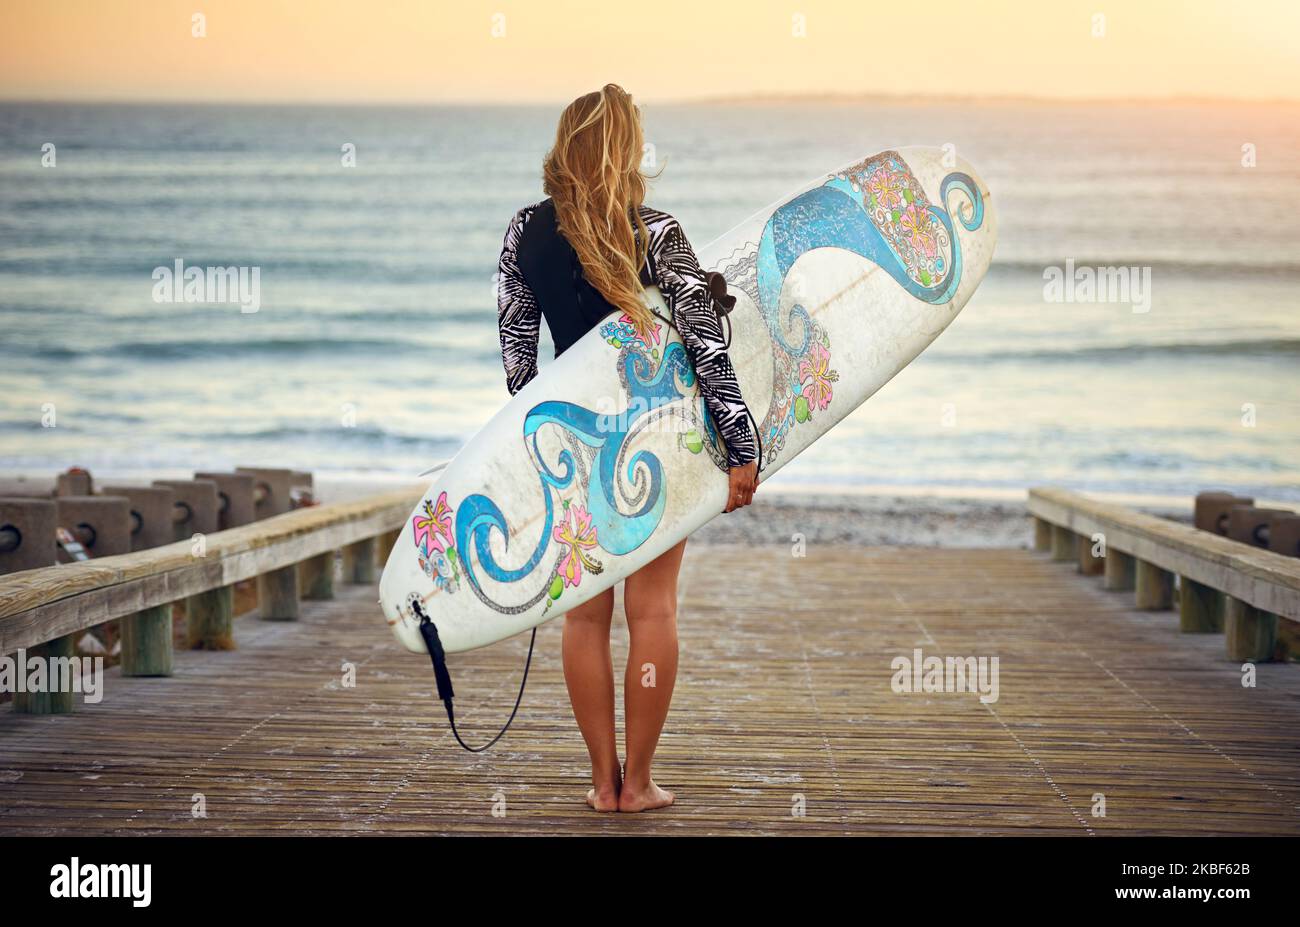 L'oceano sta chiamando. Ripresa retroversa di una giovane surfista irriconoscibile in piedi con la tavola da surf che guarda sopra l'oceano. Foto Stock